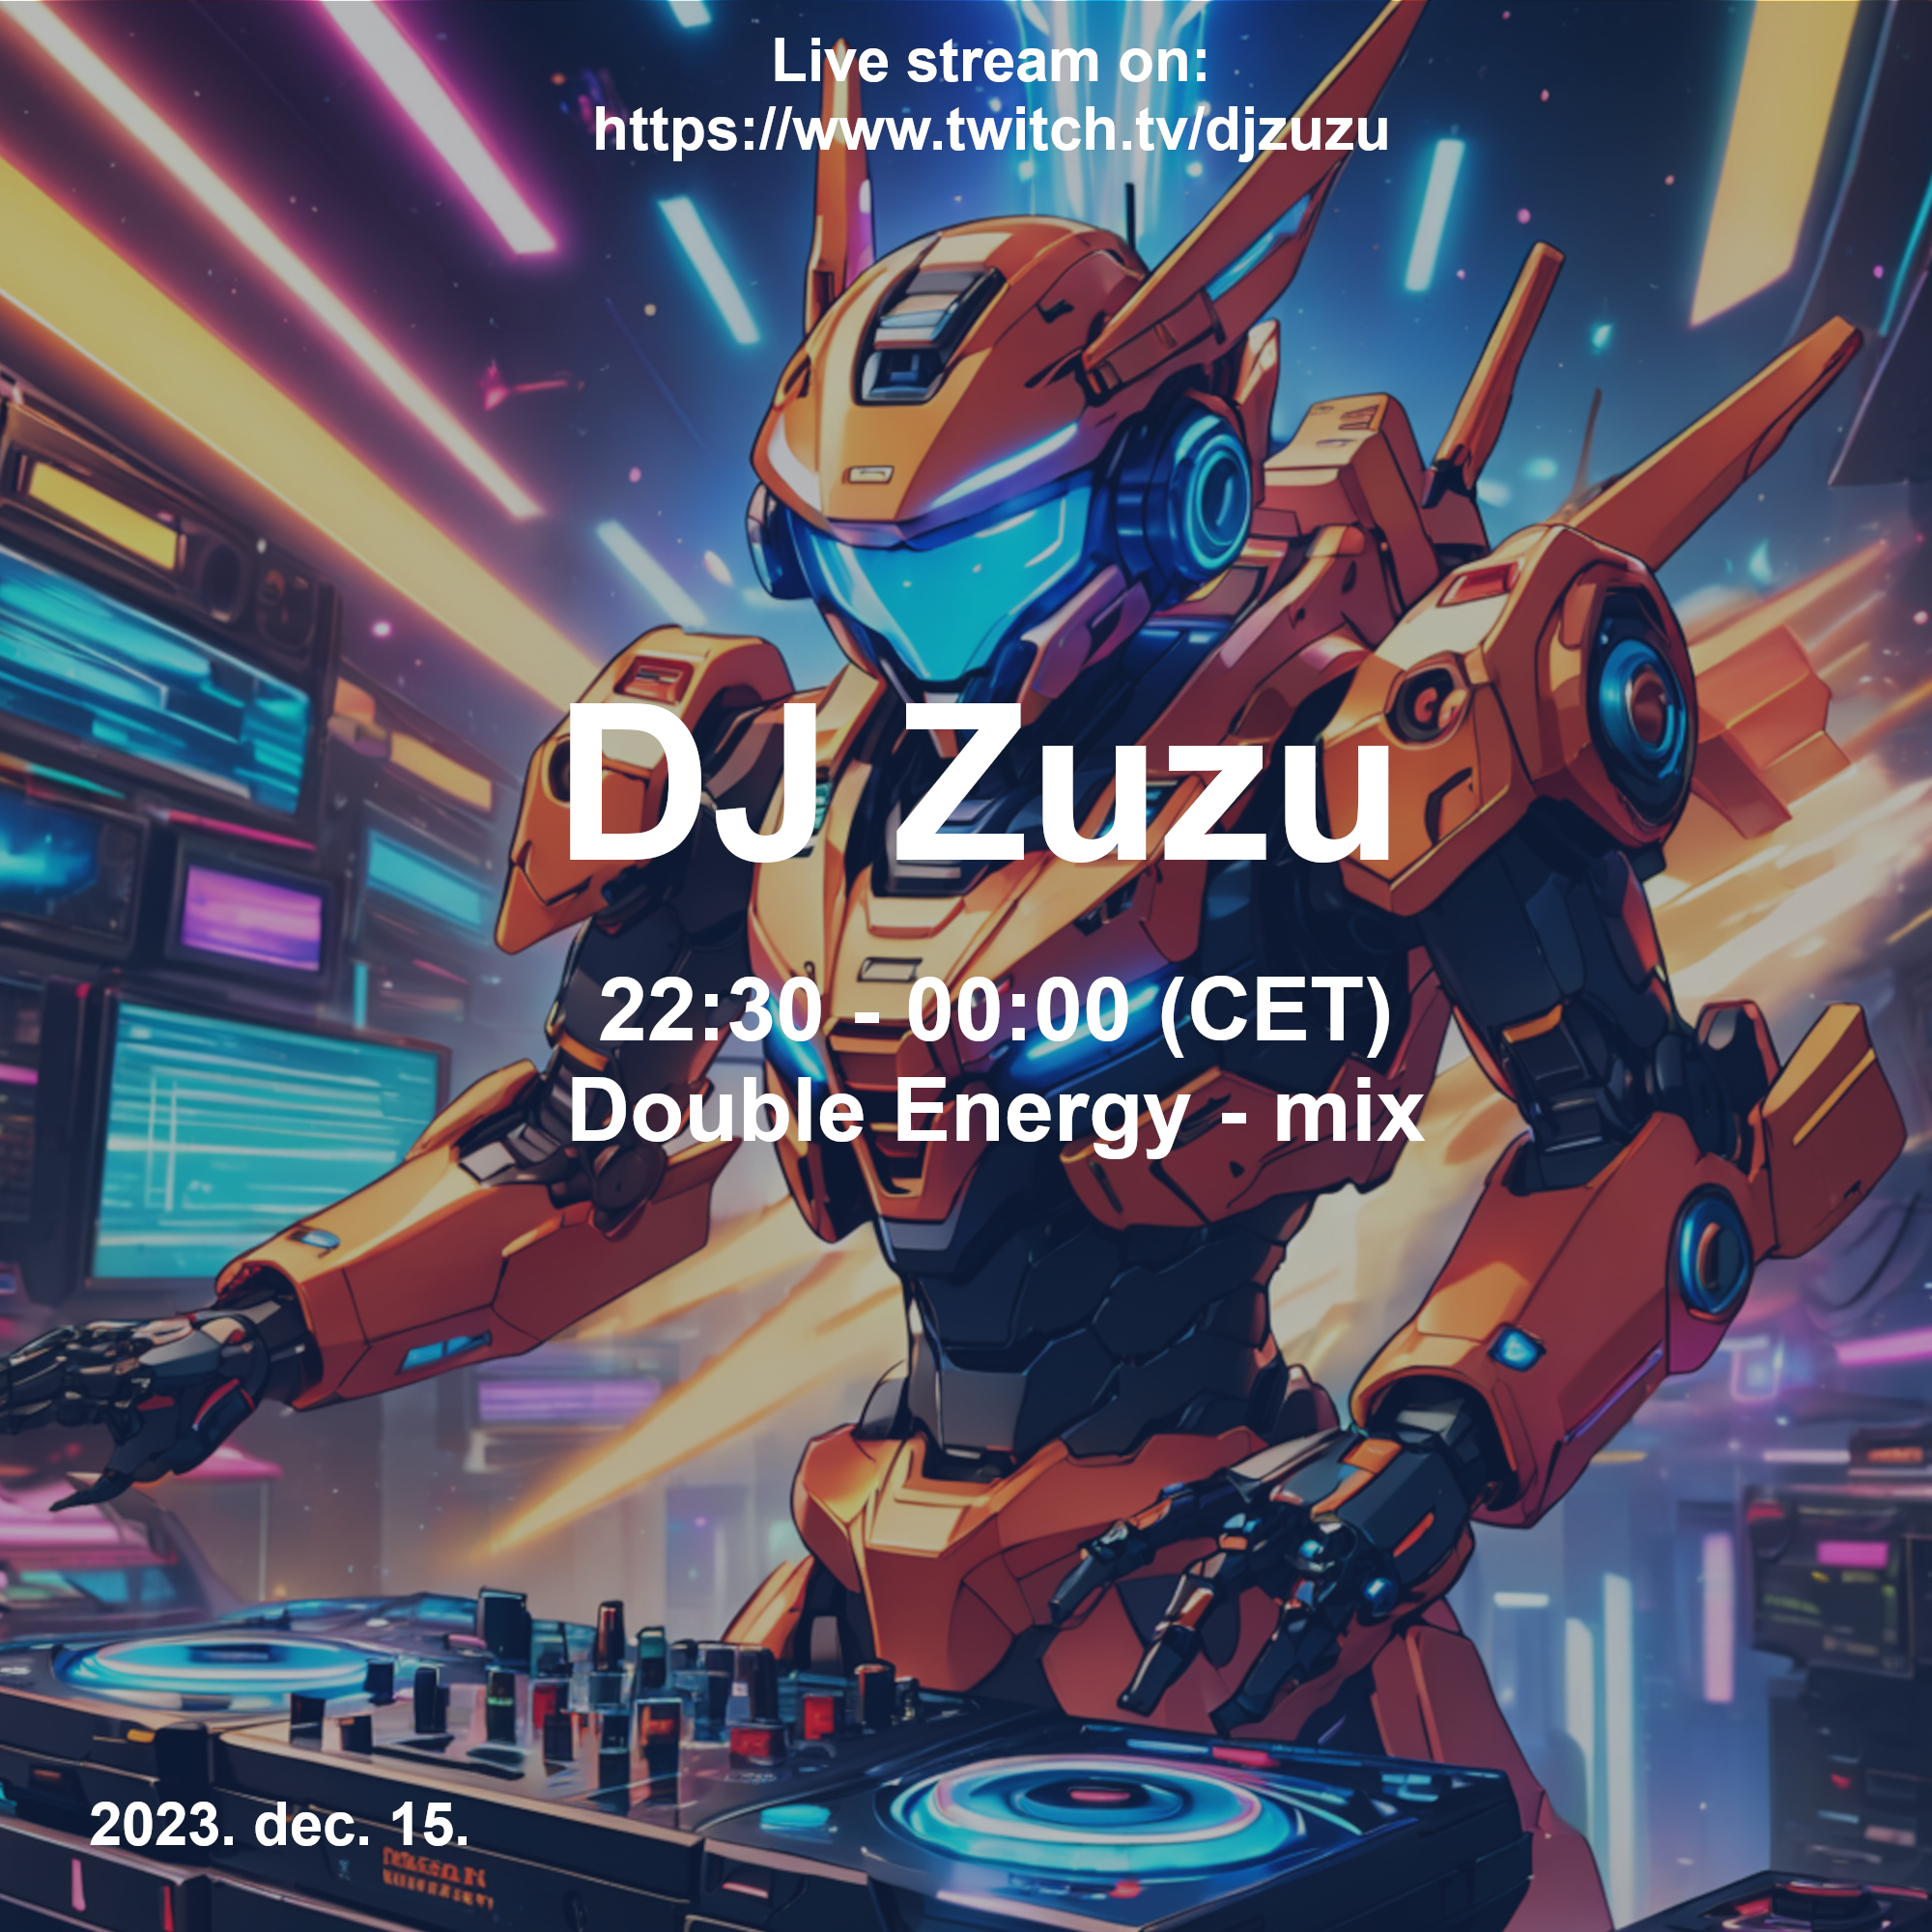 Dj Zuzu - Double Energy - mix event flyer 20231215